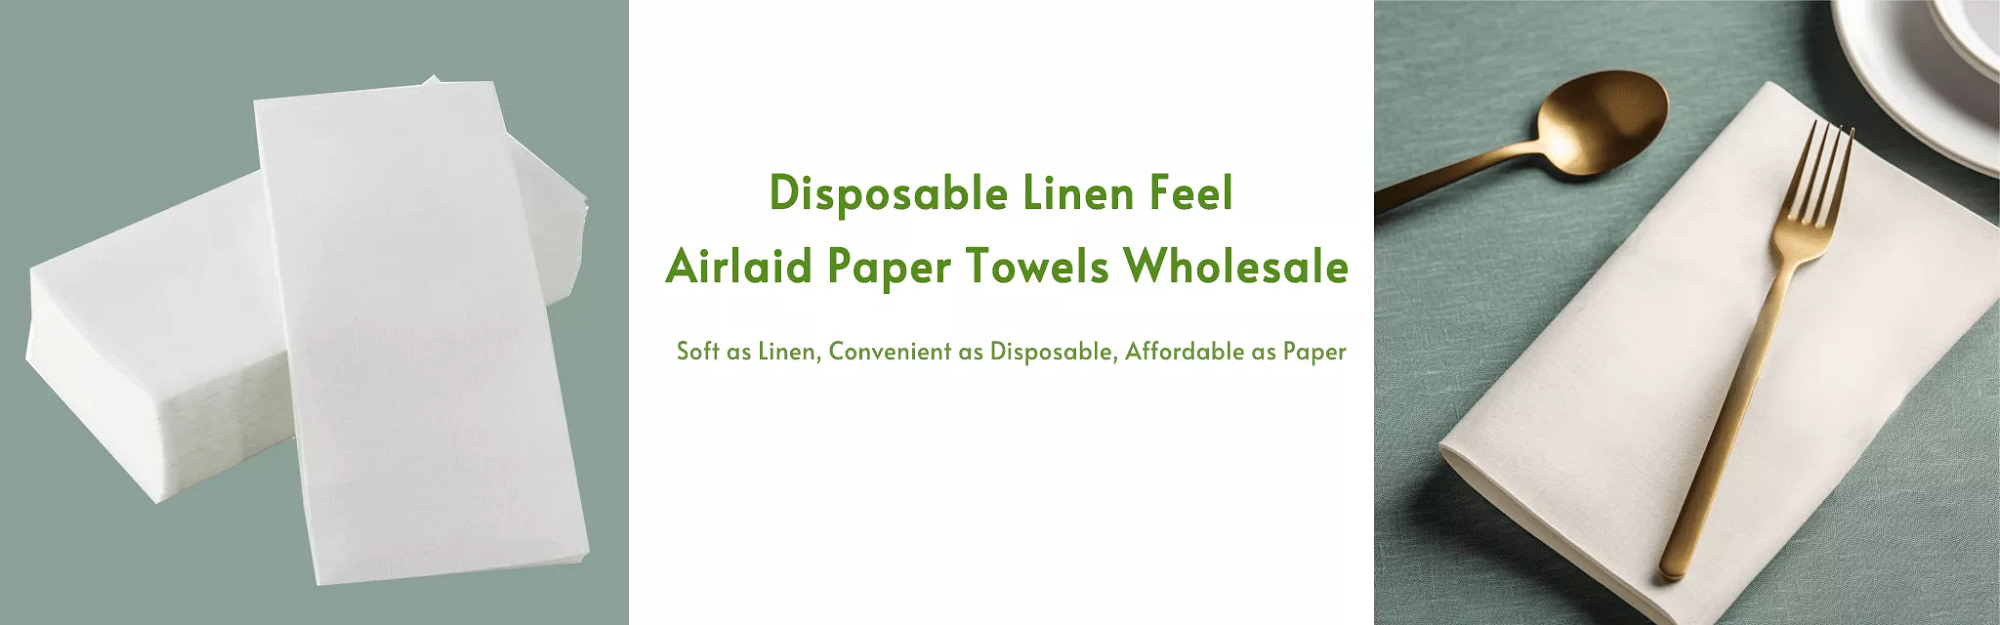 airlaid paper napkins